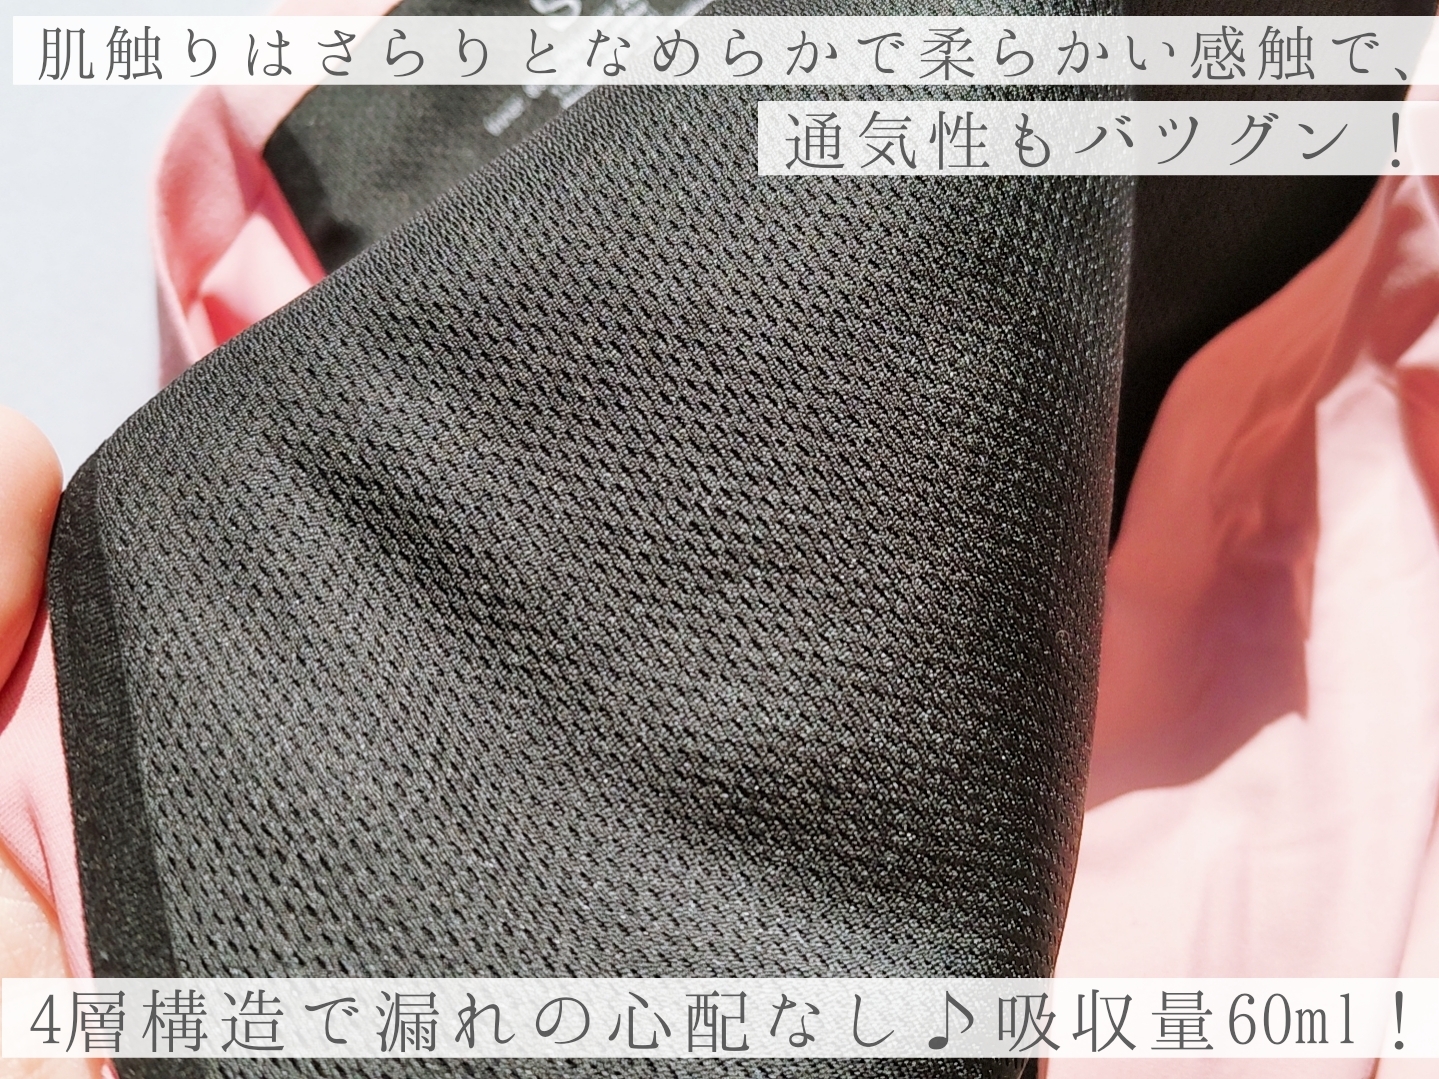 サニタリーショーツ
ハイウエストタイプ
Sサイズの良い点・メリットに関する優亜さんの口コミ画像2